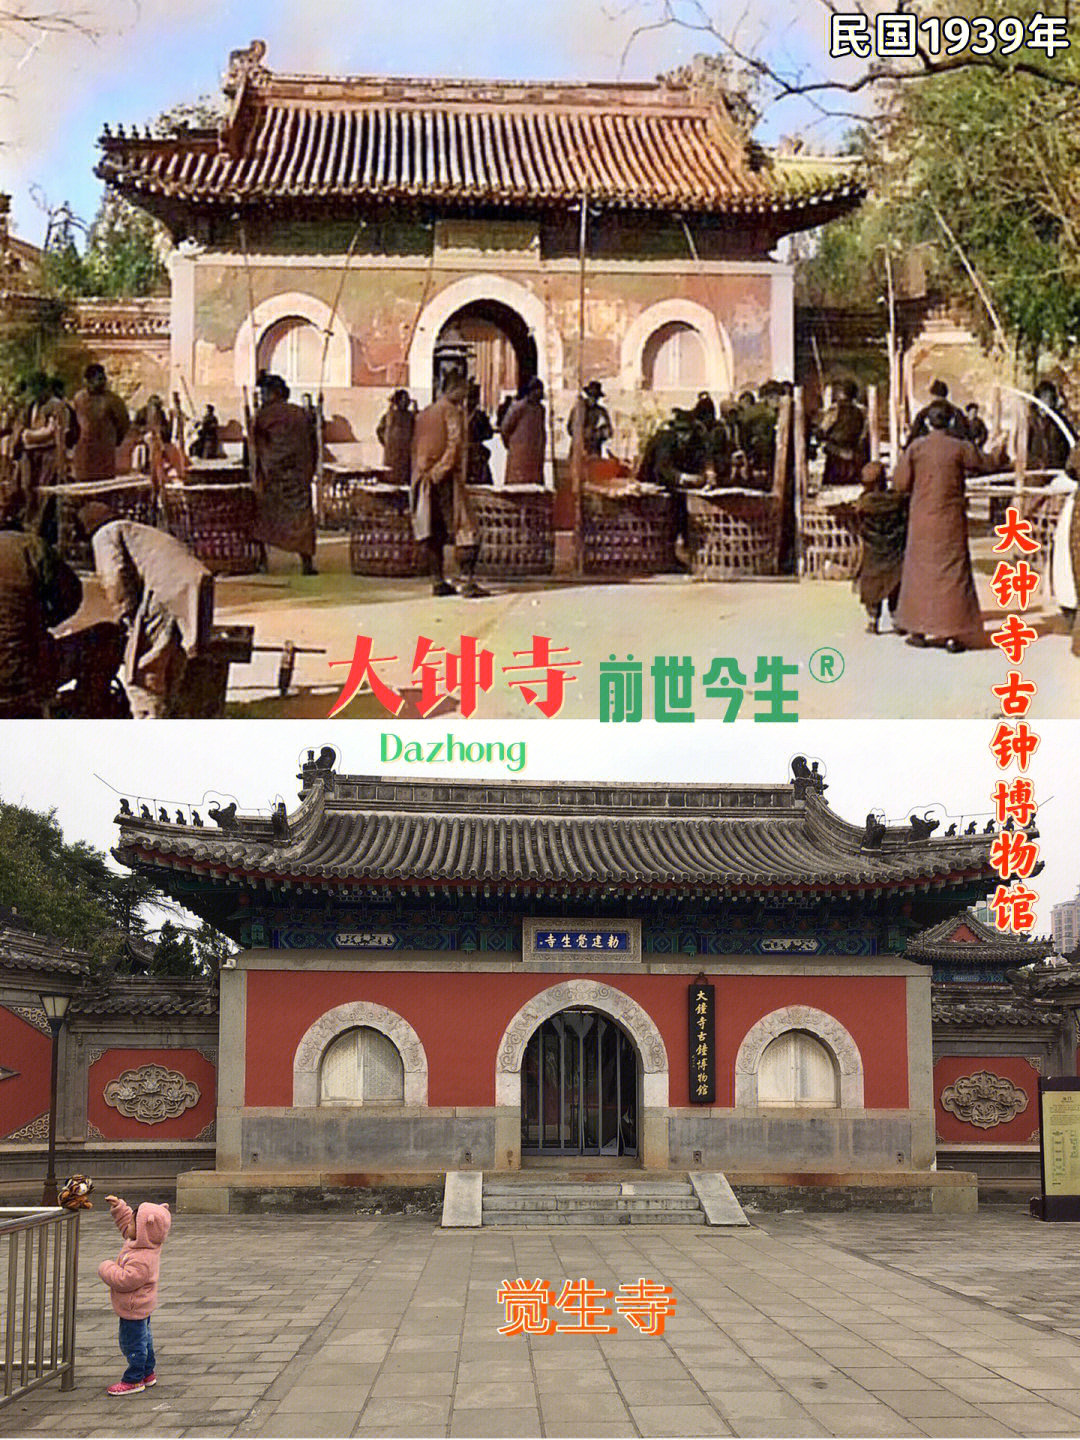 古建筑,银杏树,古钟 ……北京大钟寺原名觉生寺,建于清雍正十一年